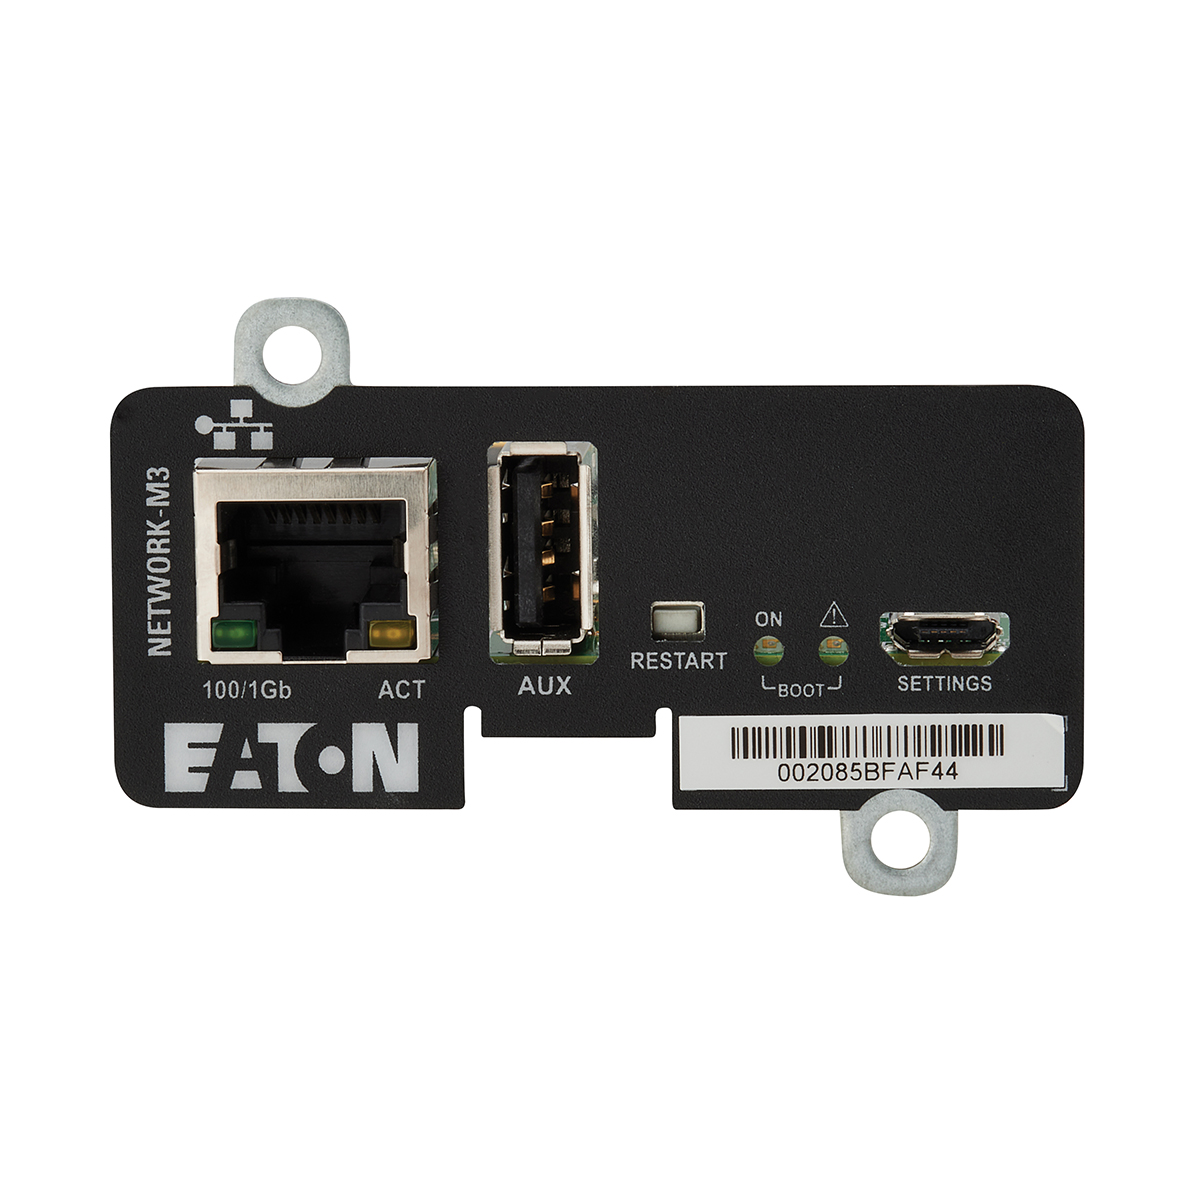 Eaton NETWORK-M3 Gigabit Mini-Slot Network Card